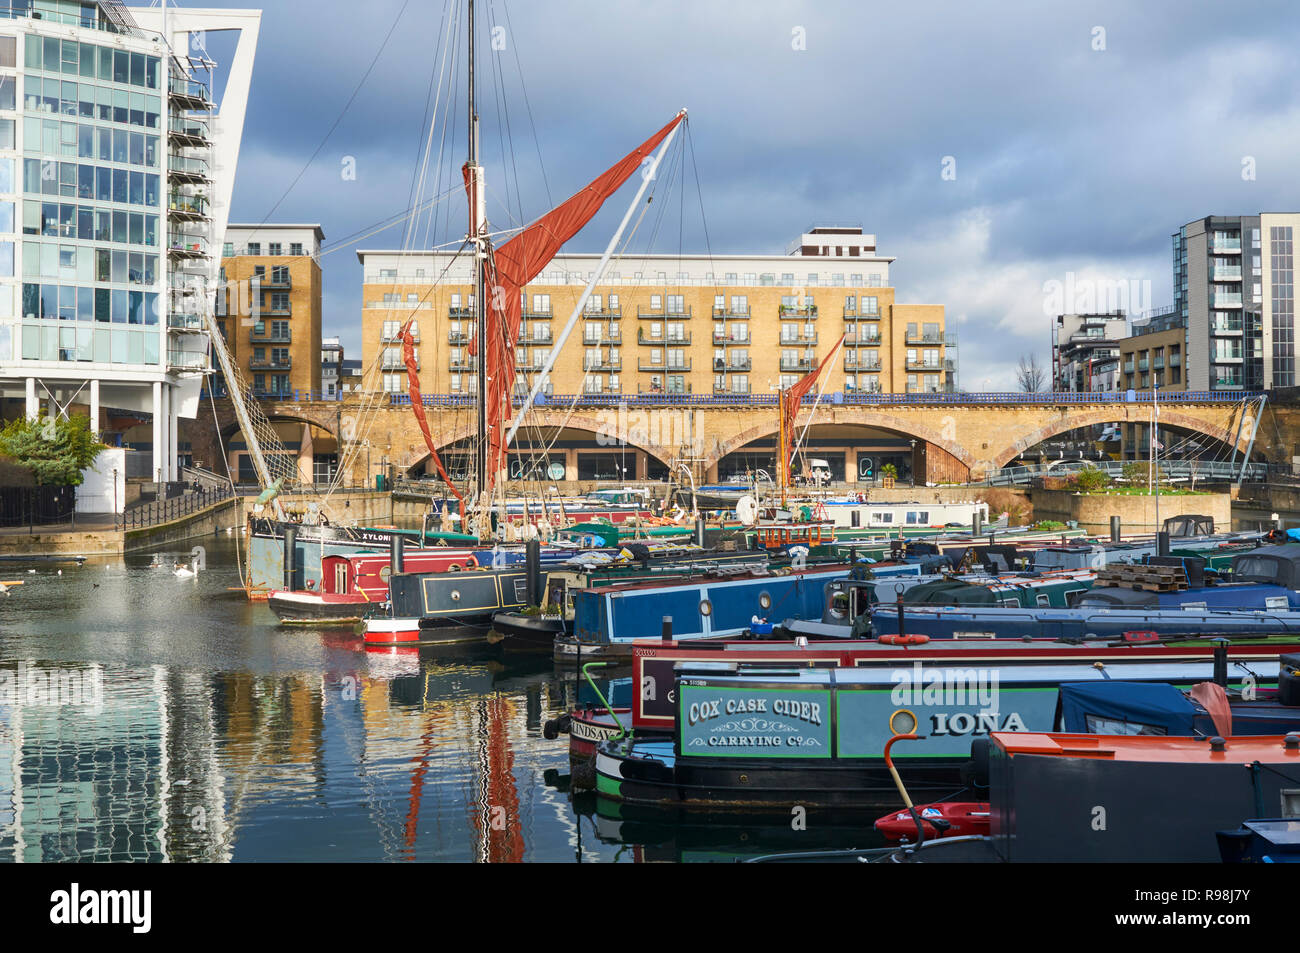 Narrowboats inside the newly developed Limehouse Basin, East London UK Stock Photo